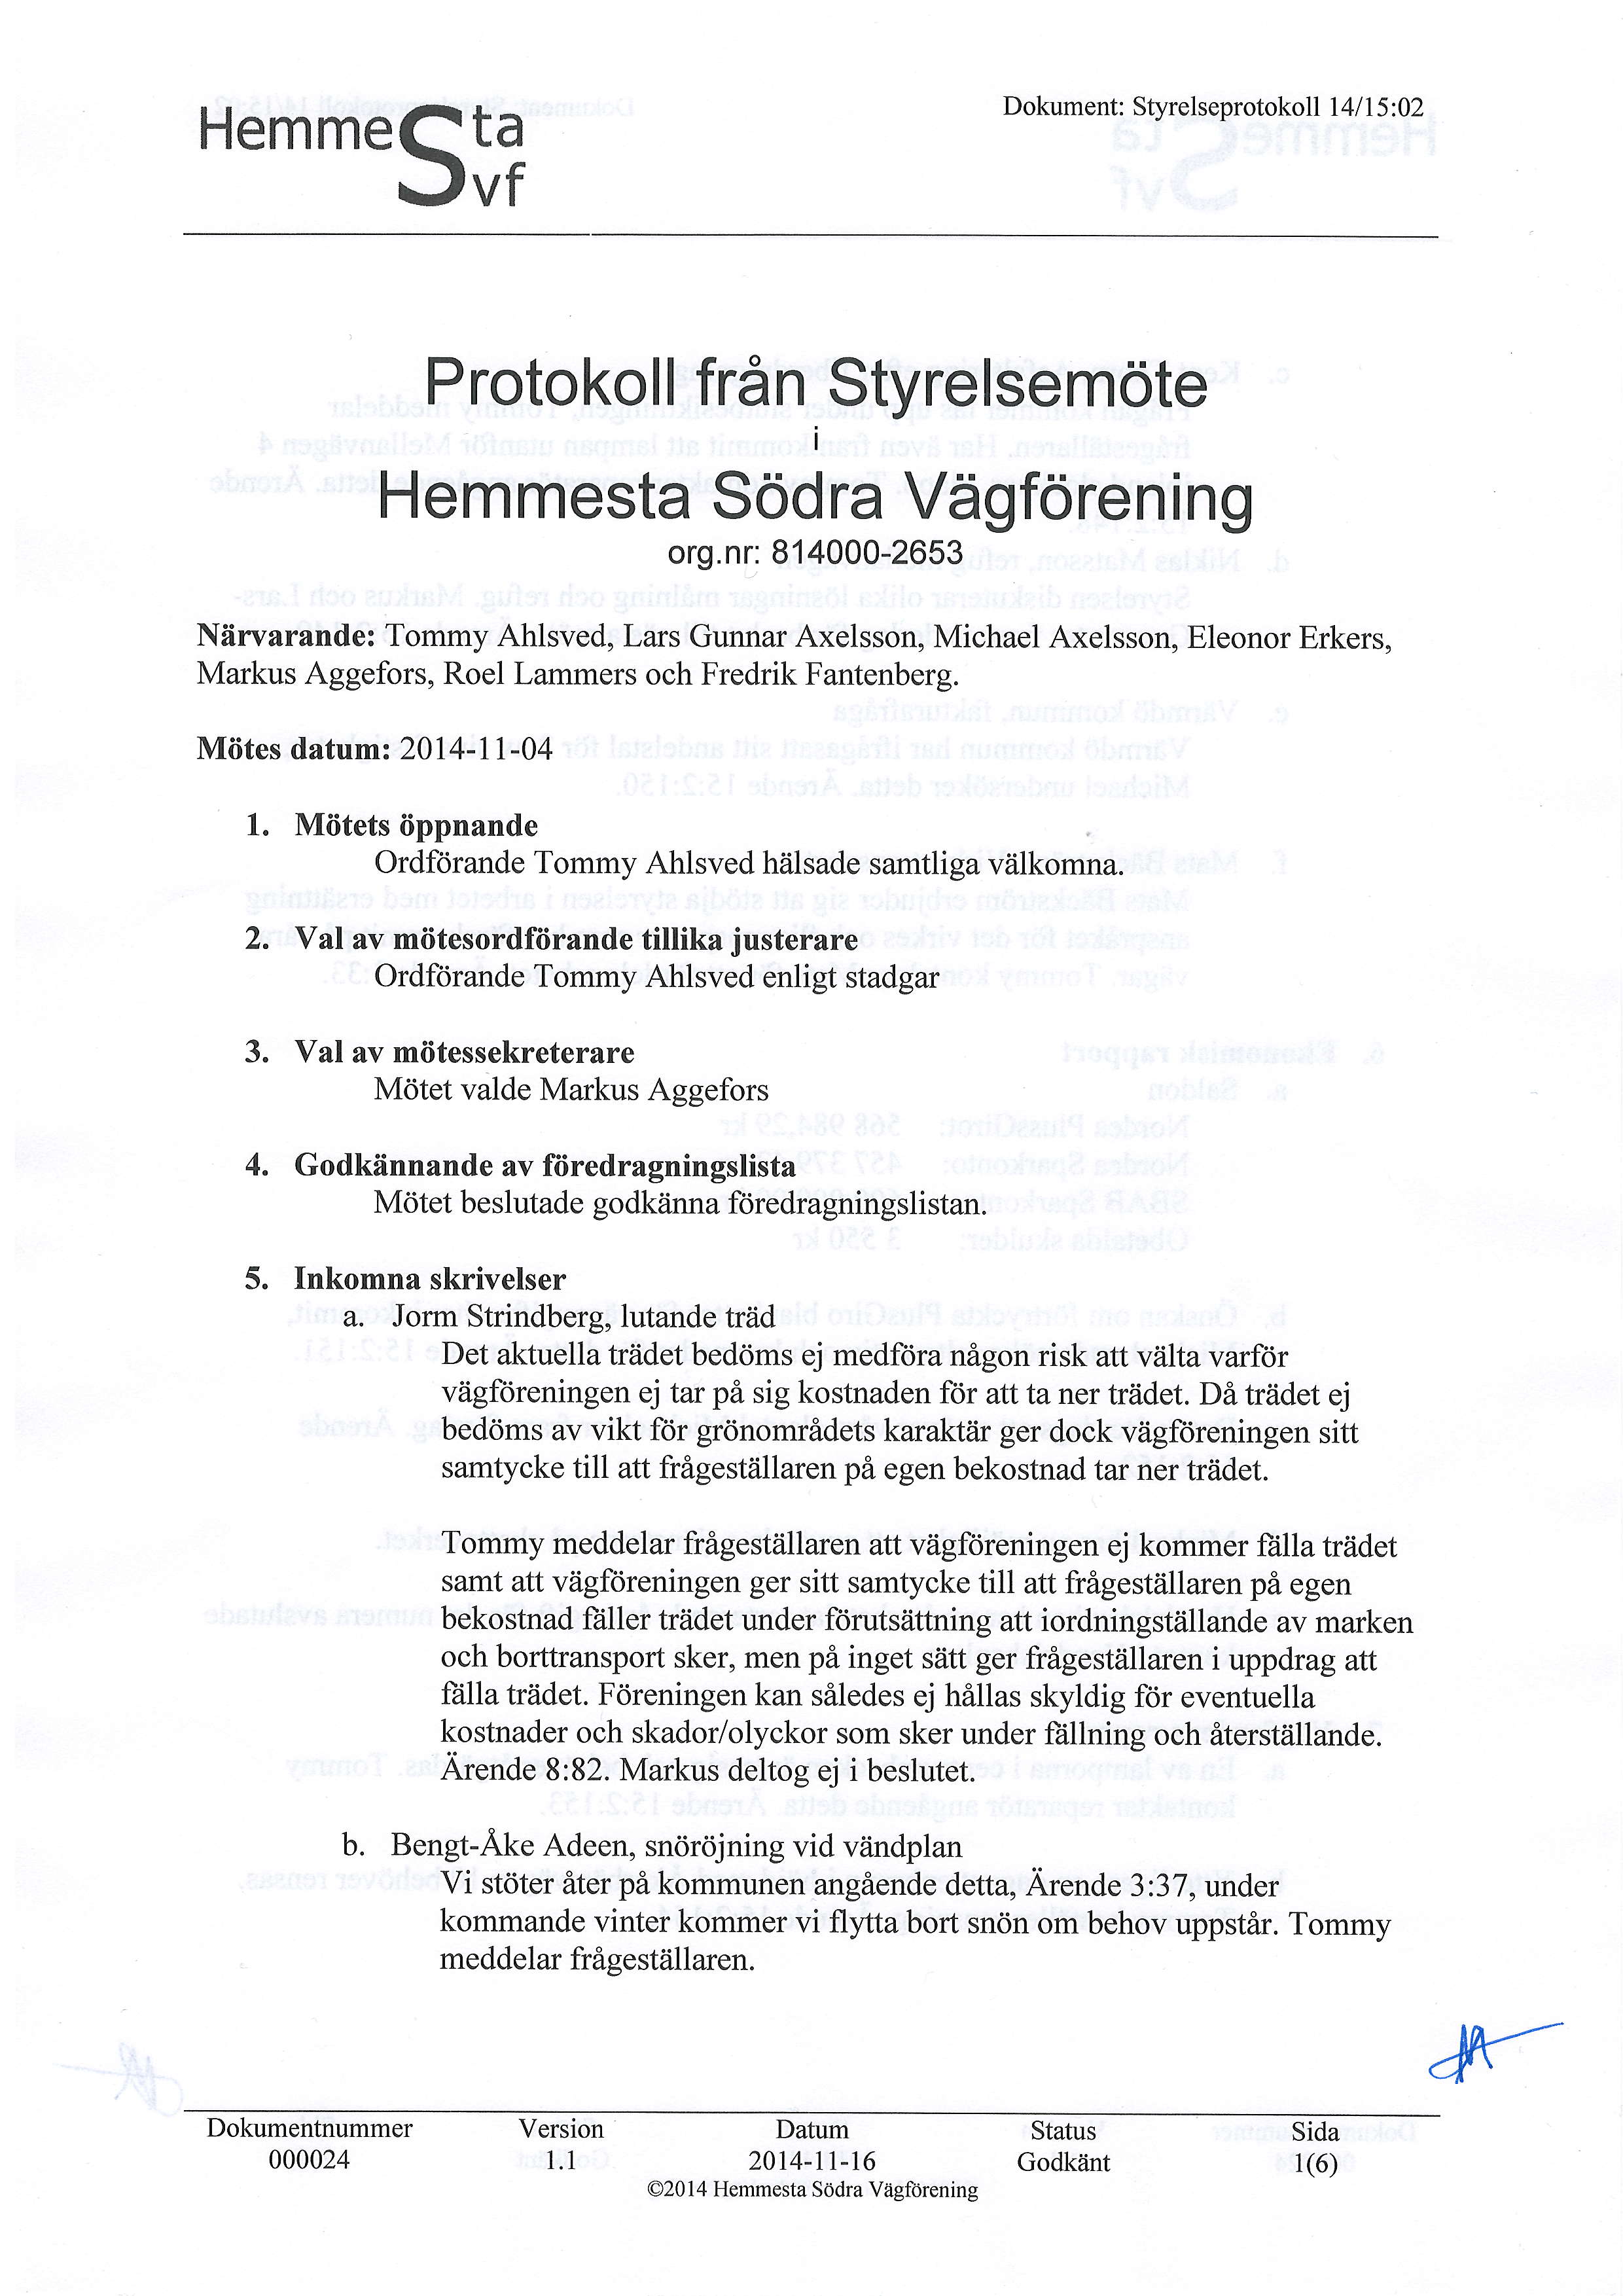 HemmeQtu rjvf Dokument: Styrelseprotokoll 14 I 5 :02 Protokoll fran Styrelsemote Hemmesta Sodra Vagforening org.